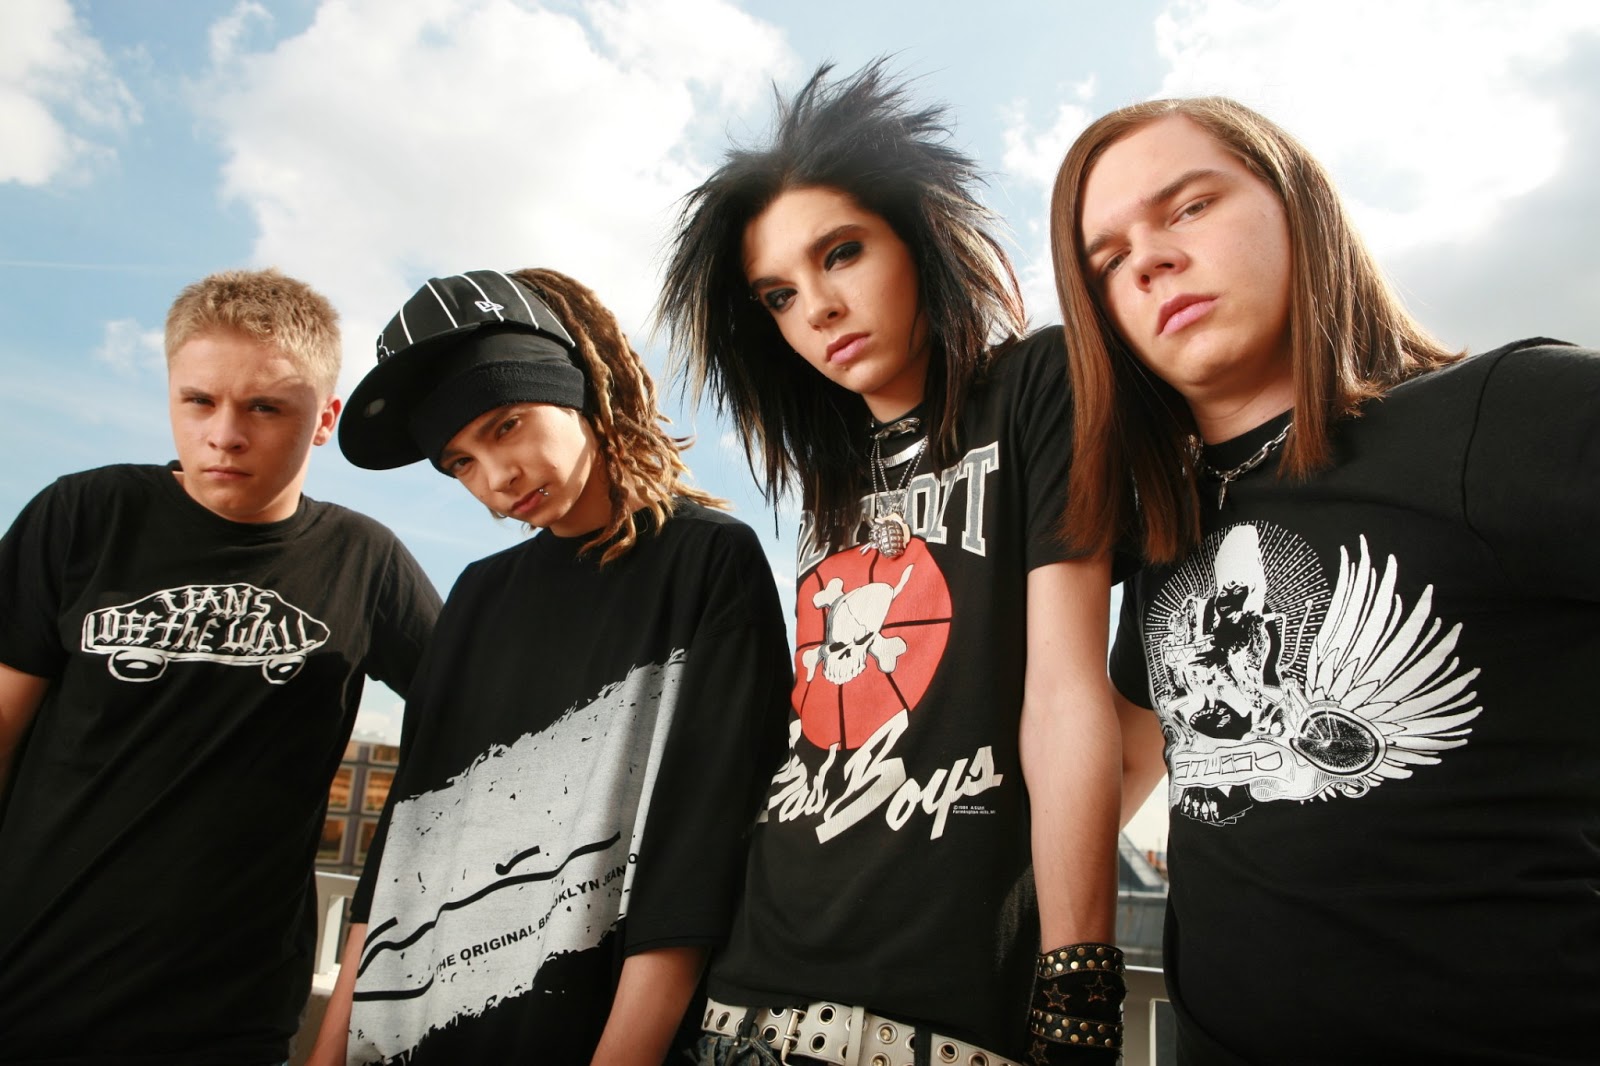 Немецкая группа парень. Группа Tokio Hotel 2006. Немецкая Молодежная группа Токио хотел. Токио Российская рок-группа. Тотал хотел группа.